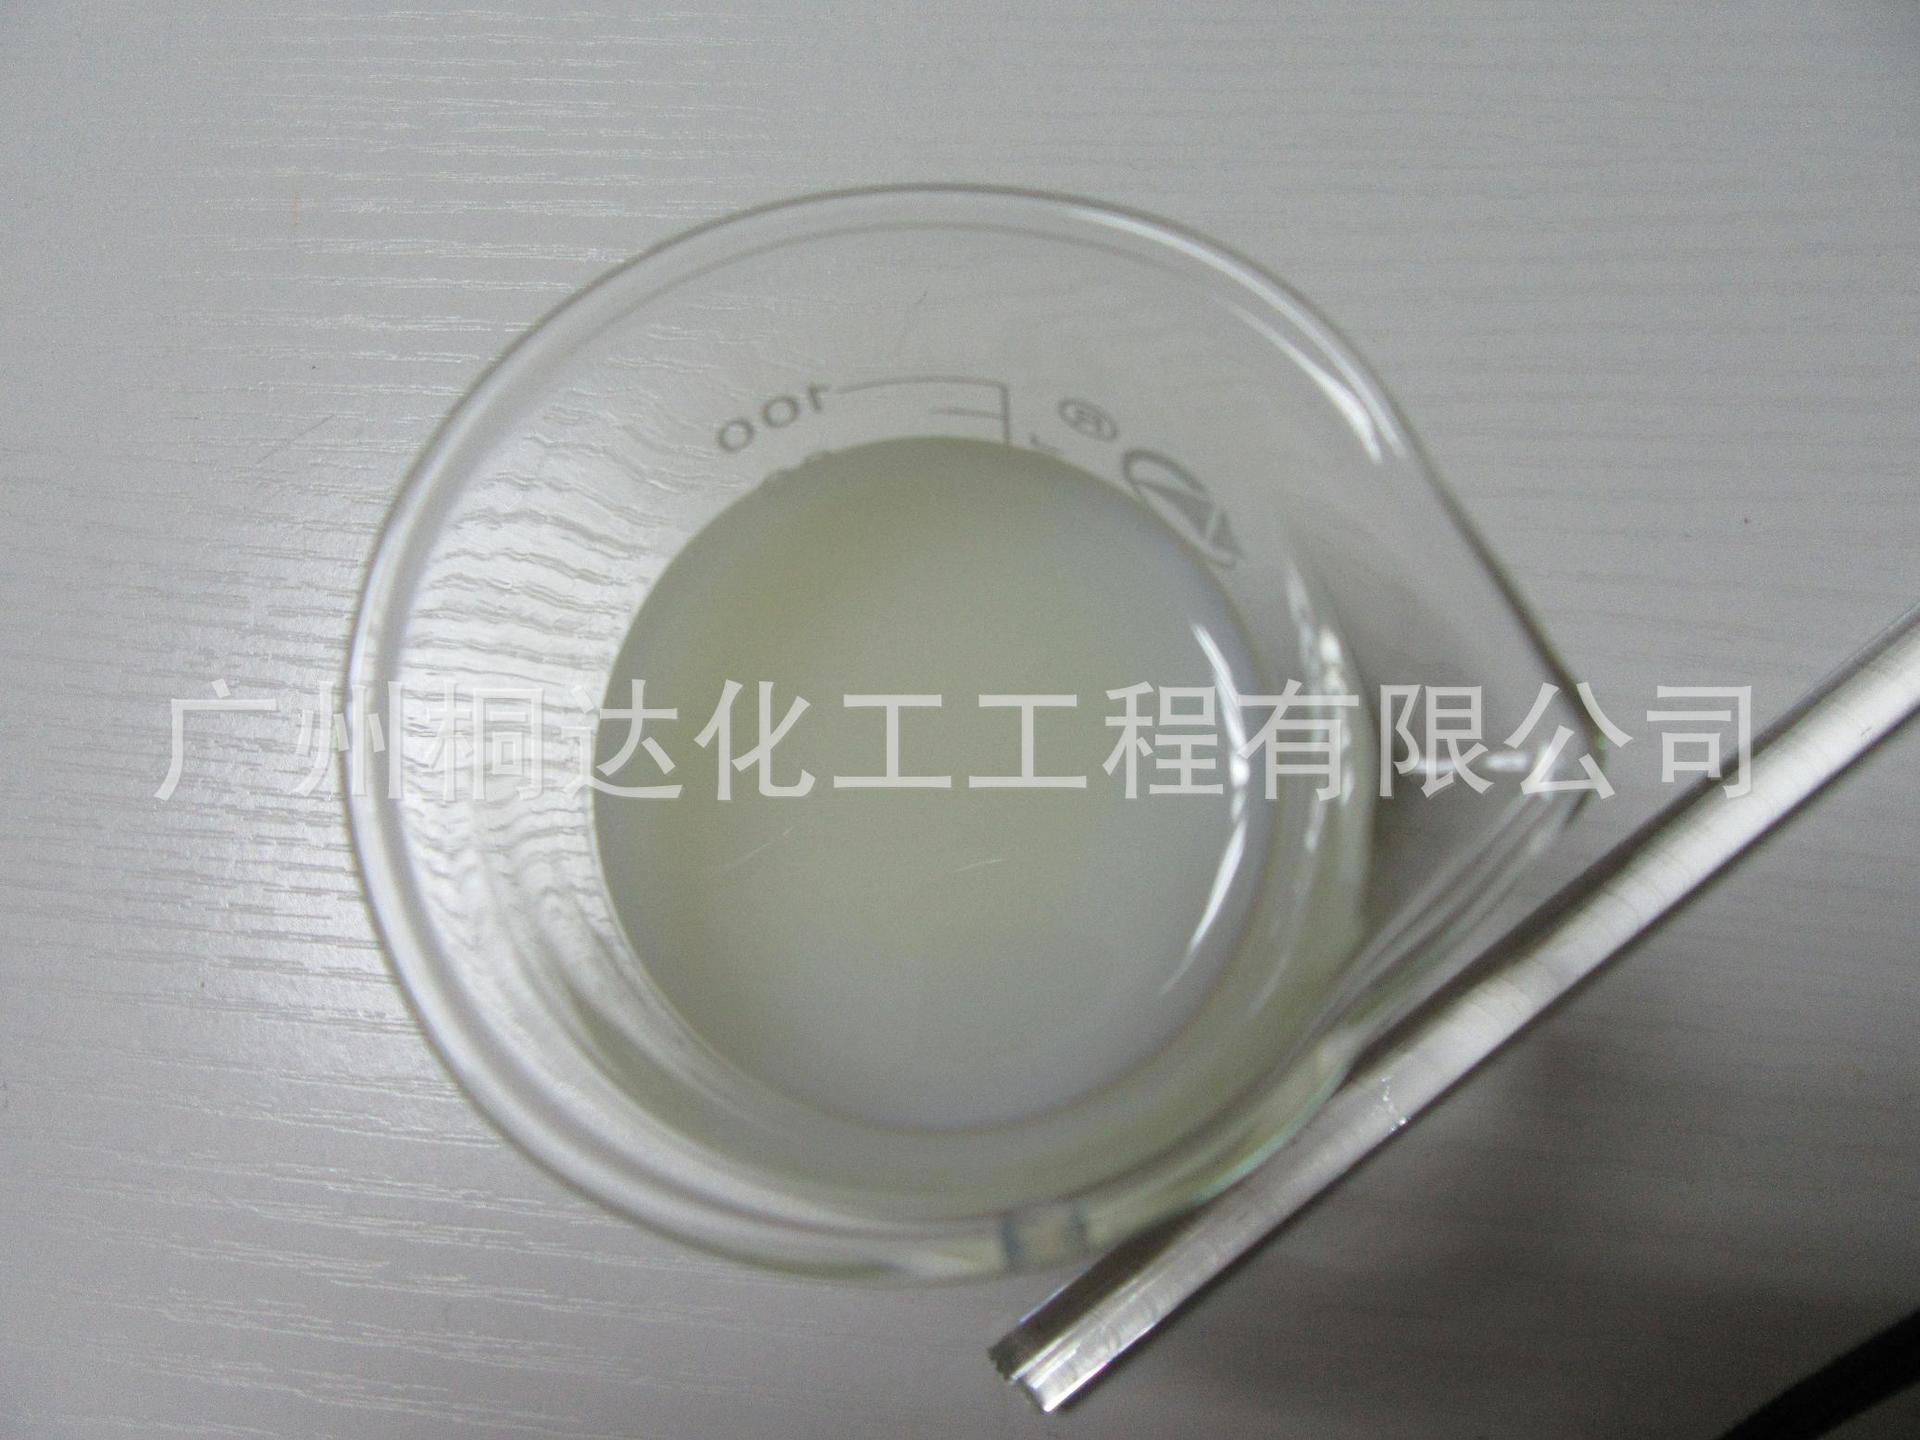 SSZ-133 水性丙烯酸树脂、水性丙烯酸乳液、水性树脂乳液示例图3